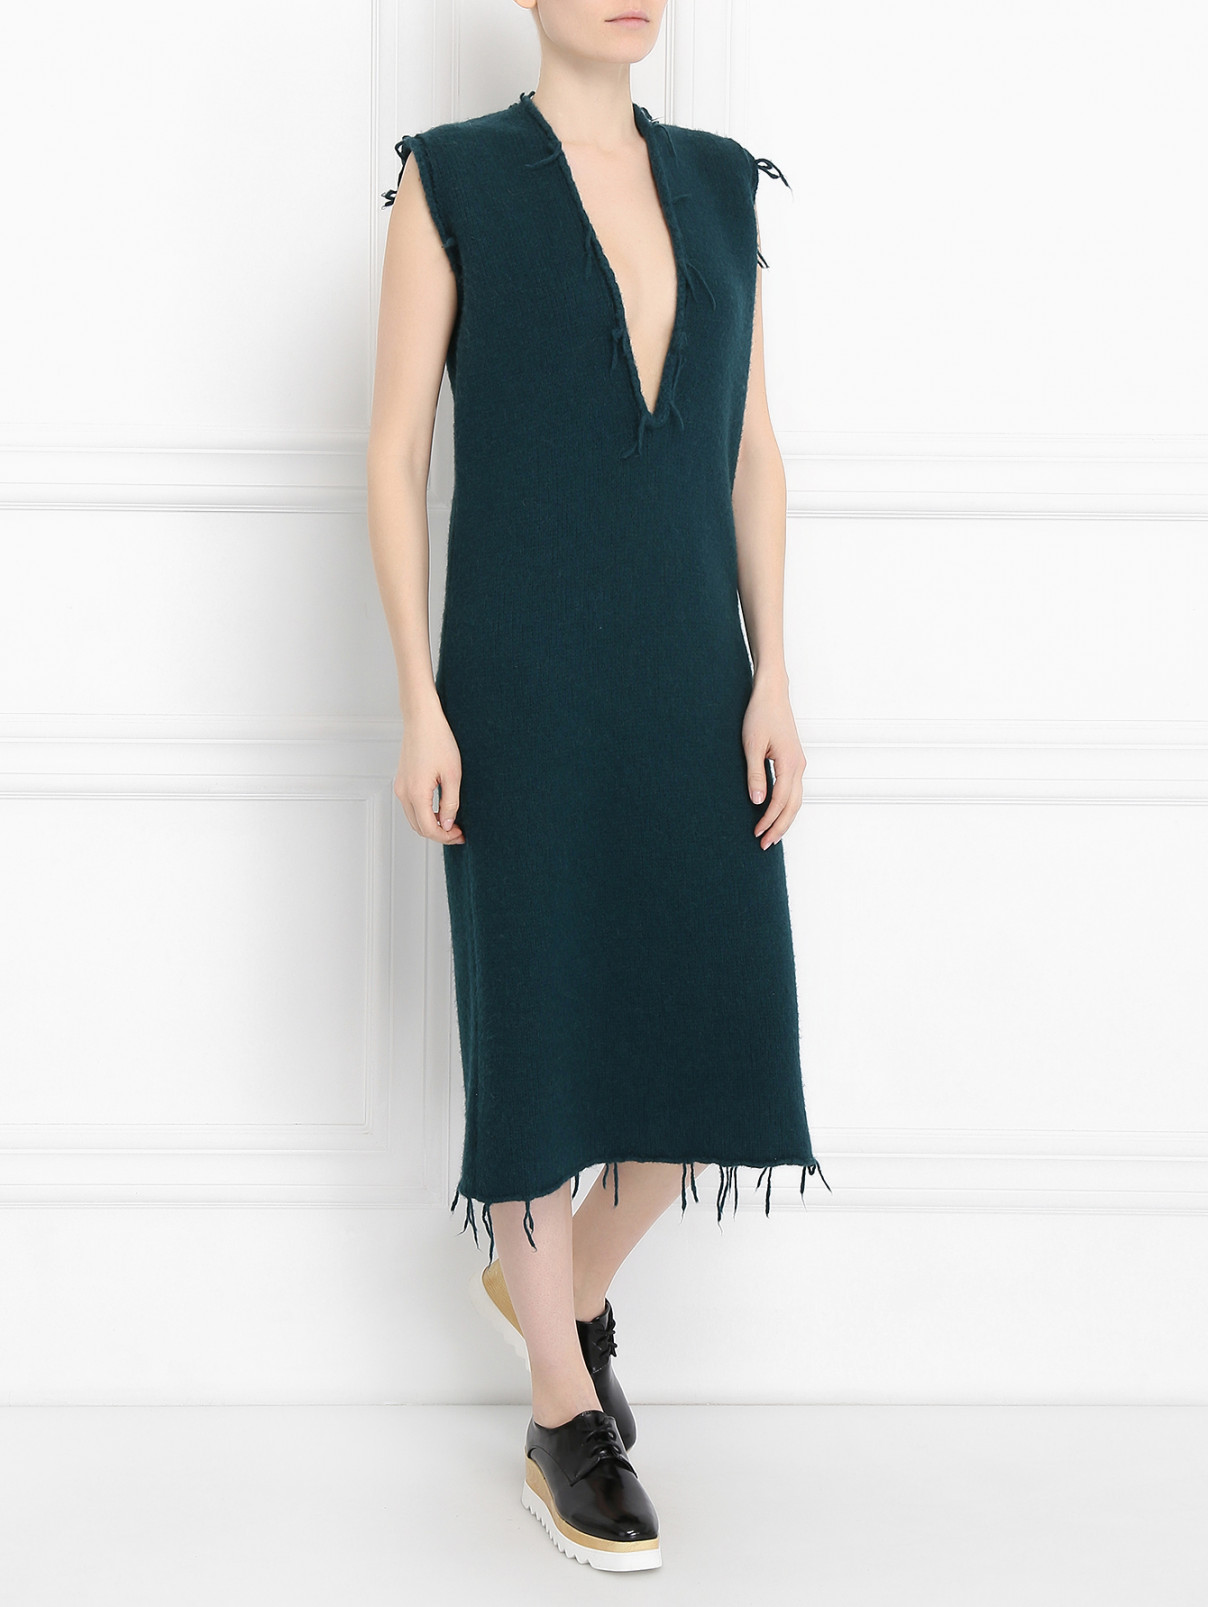 Платье-макси из шерсти крупной вязки Maison Margiela  –  Модель Общий вид  – Цвет:  Зеленый